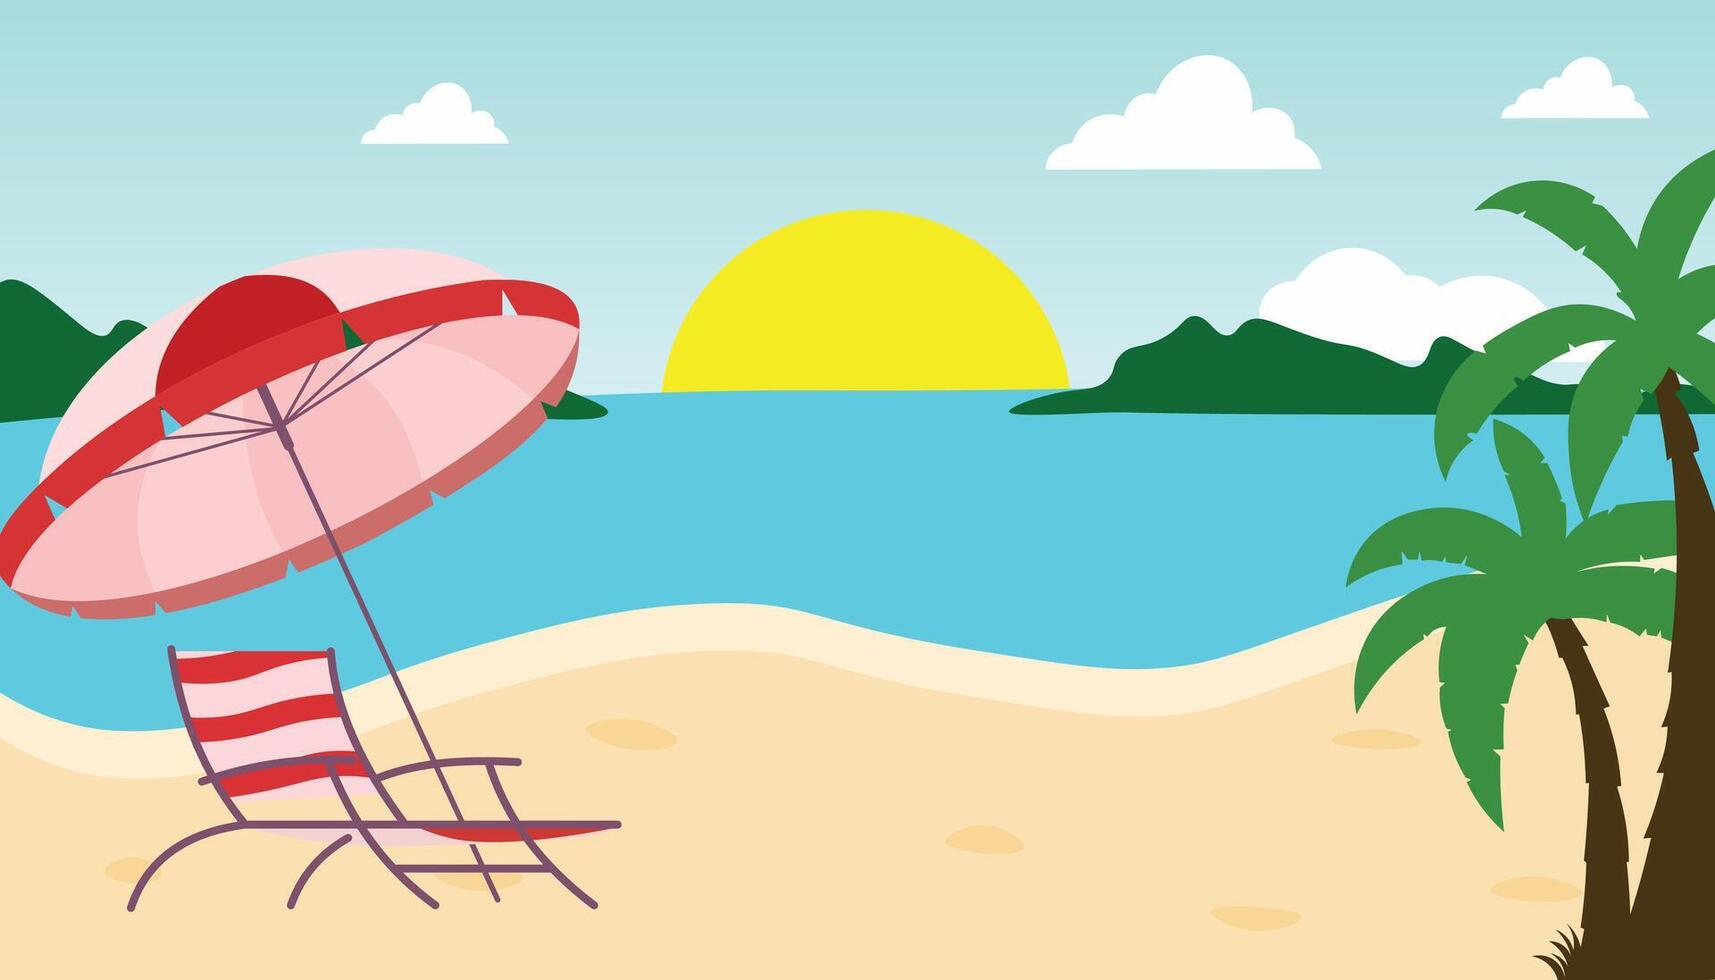 verano playa antecedentes vector ilustración.